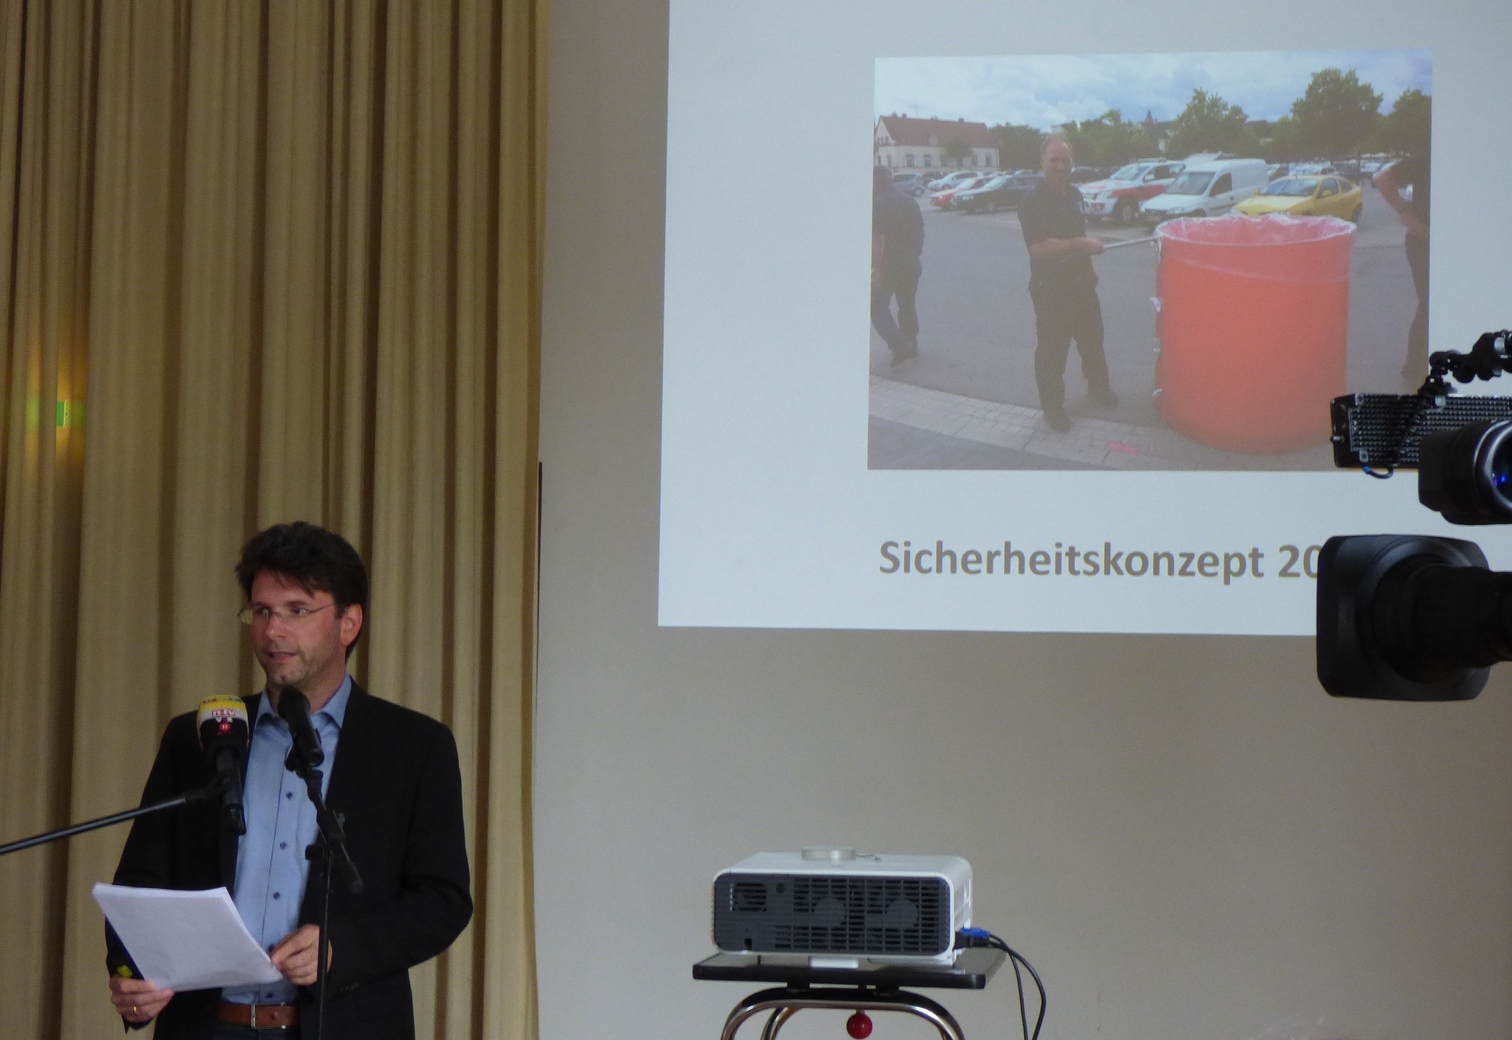 Bürgermeister Glogger stellte das Sicherheitskonzept vor. Foto: Pfalz-Express/Ahme